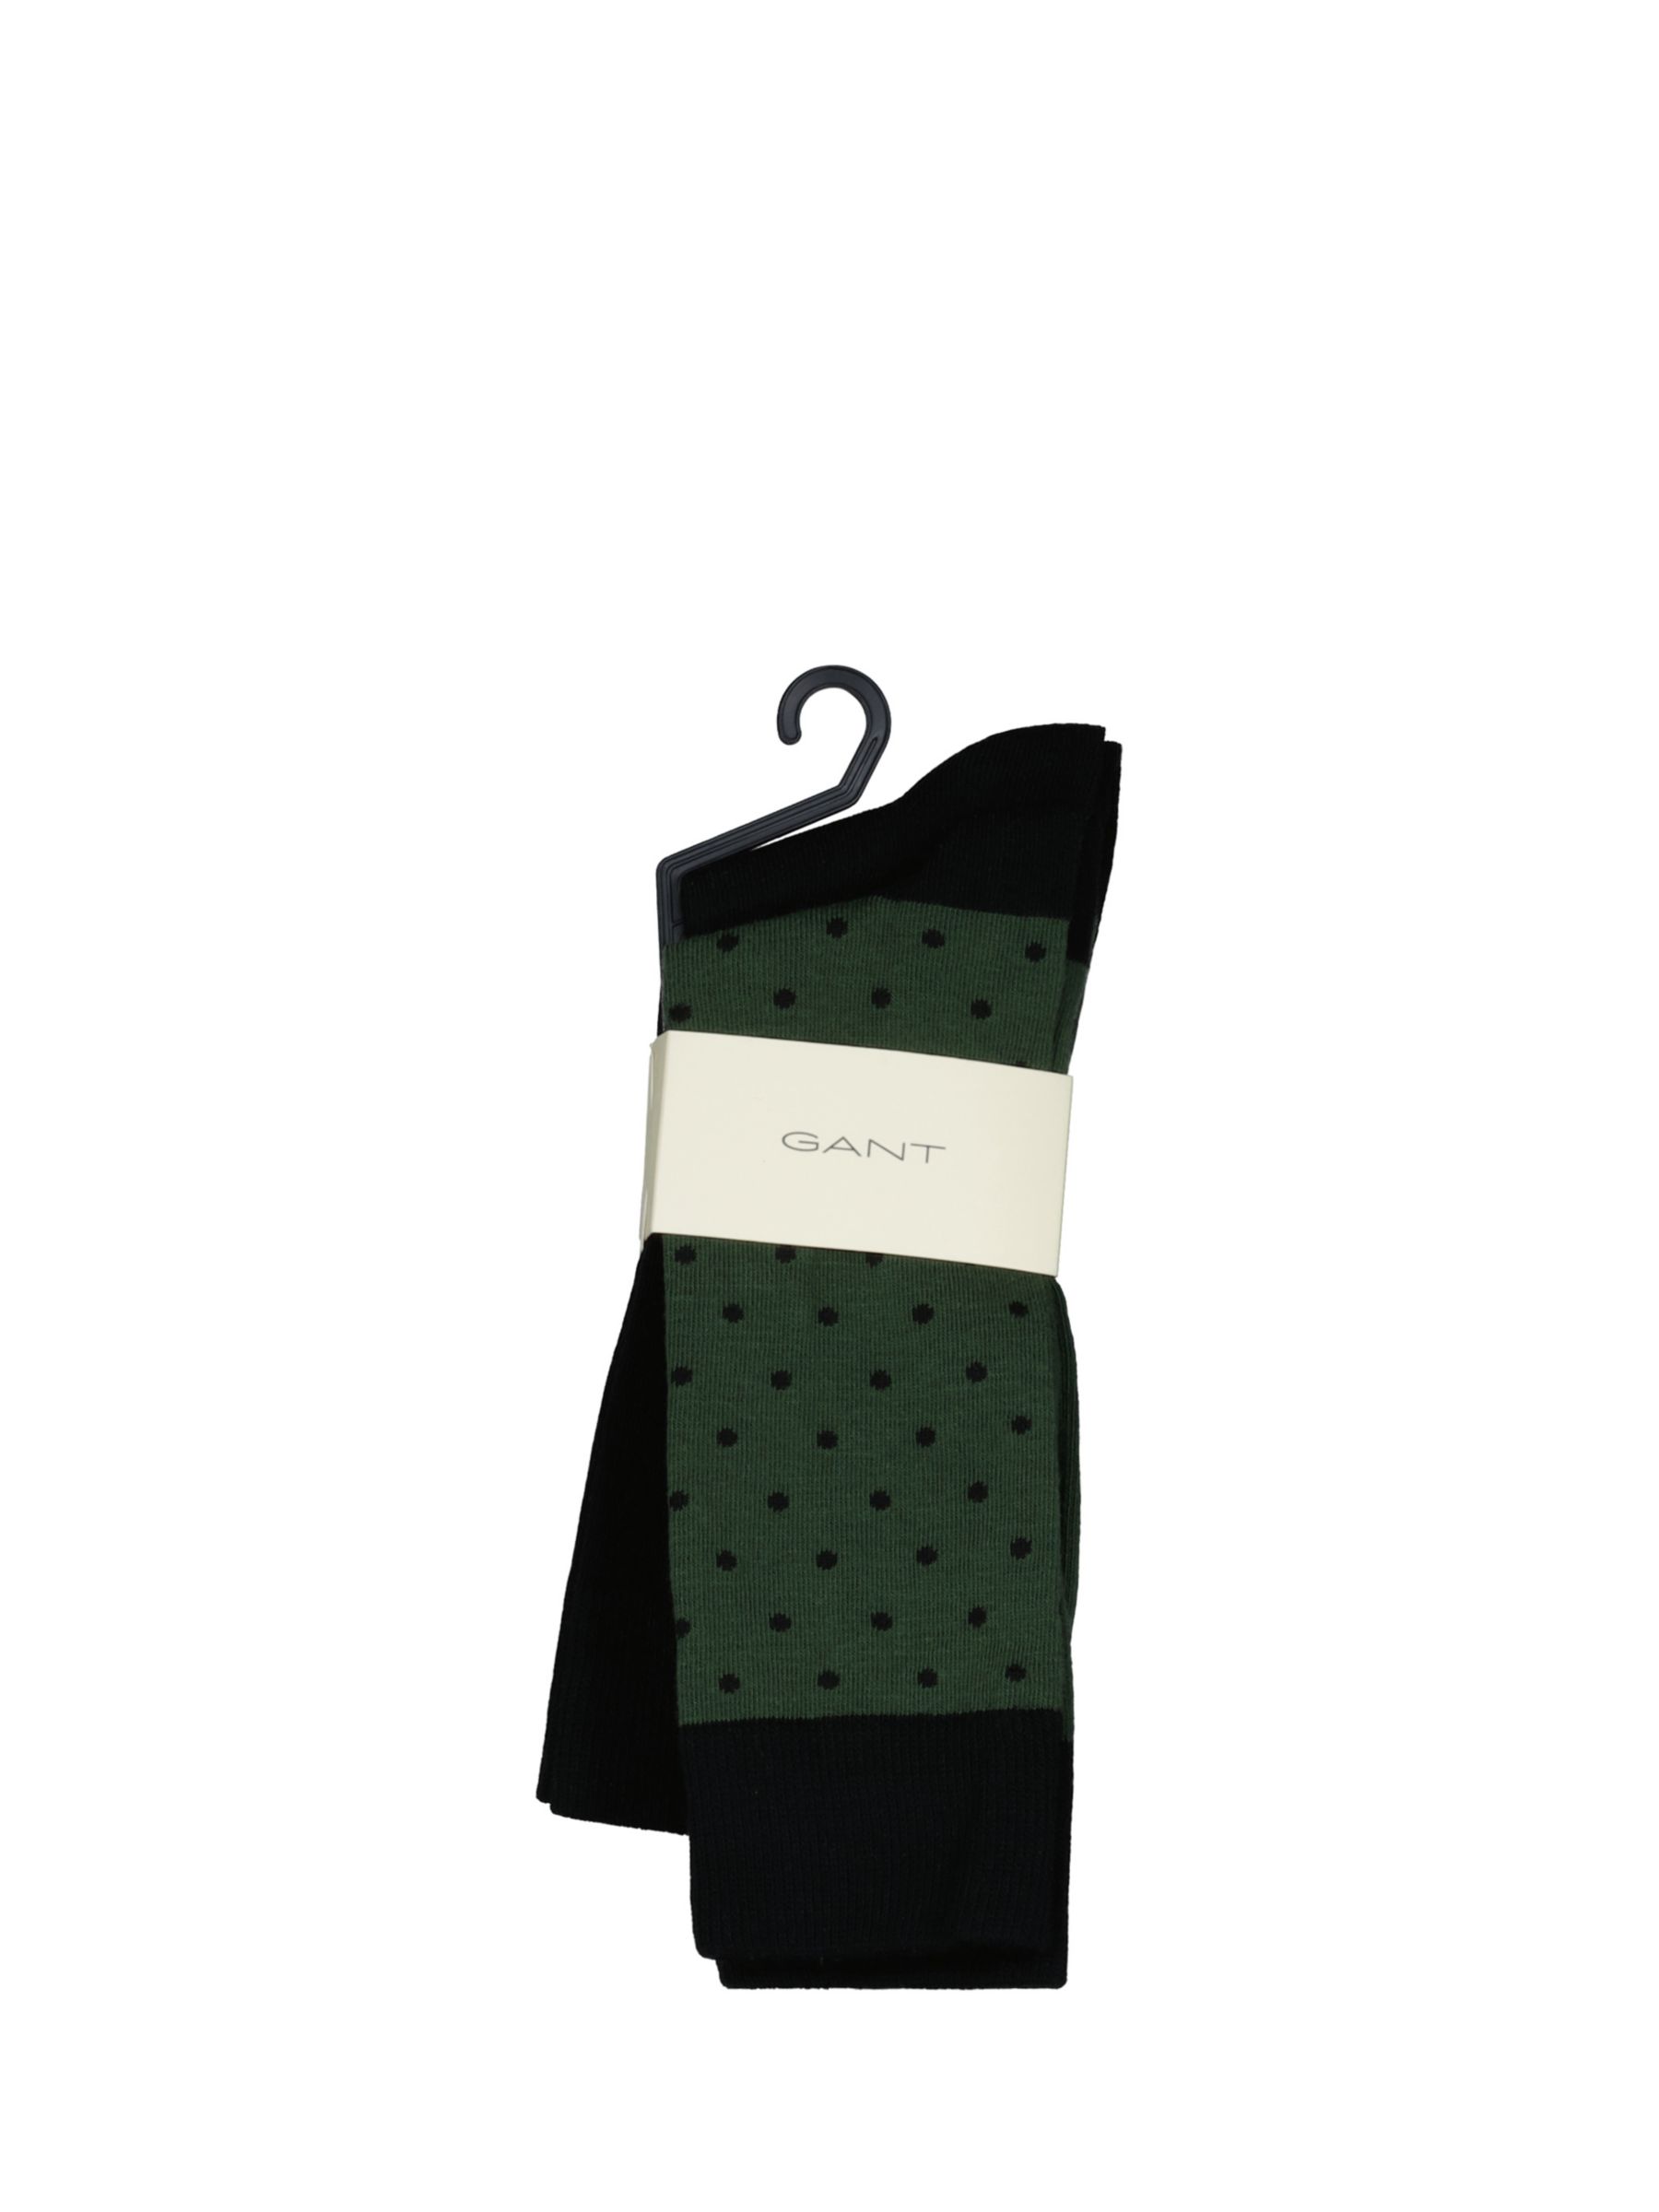 Buy GANT Combed Cotton Socks, Pack of 2, Green/Black Online at johnlewis.com